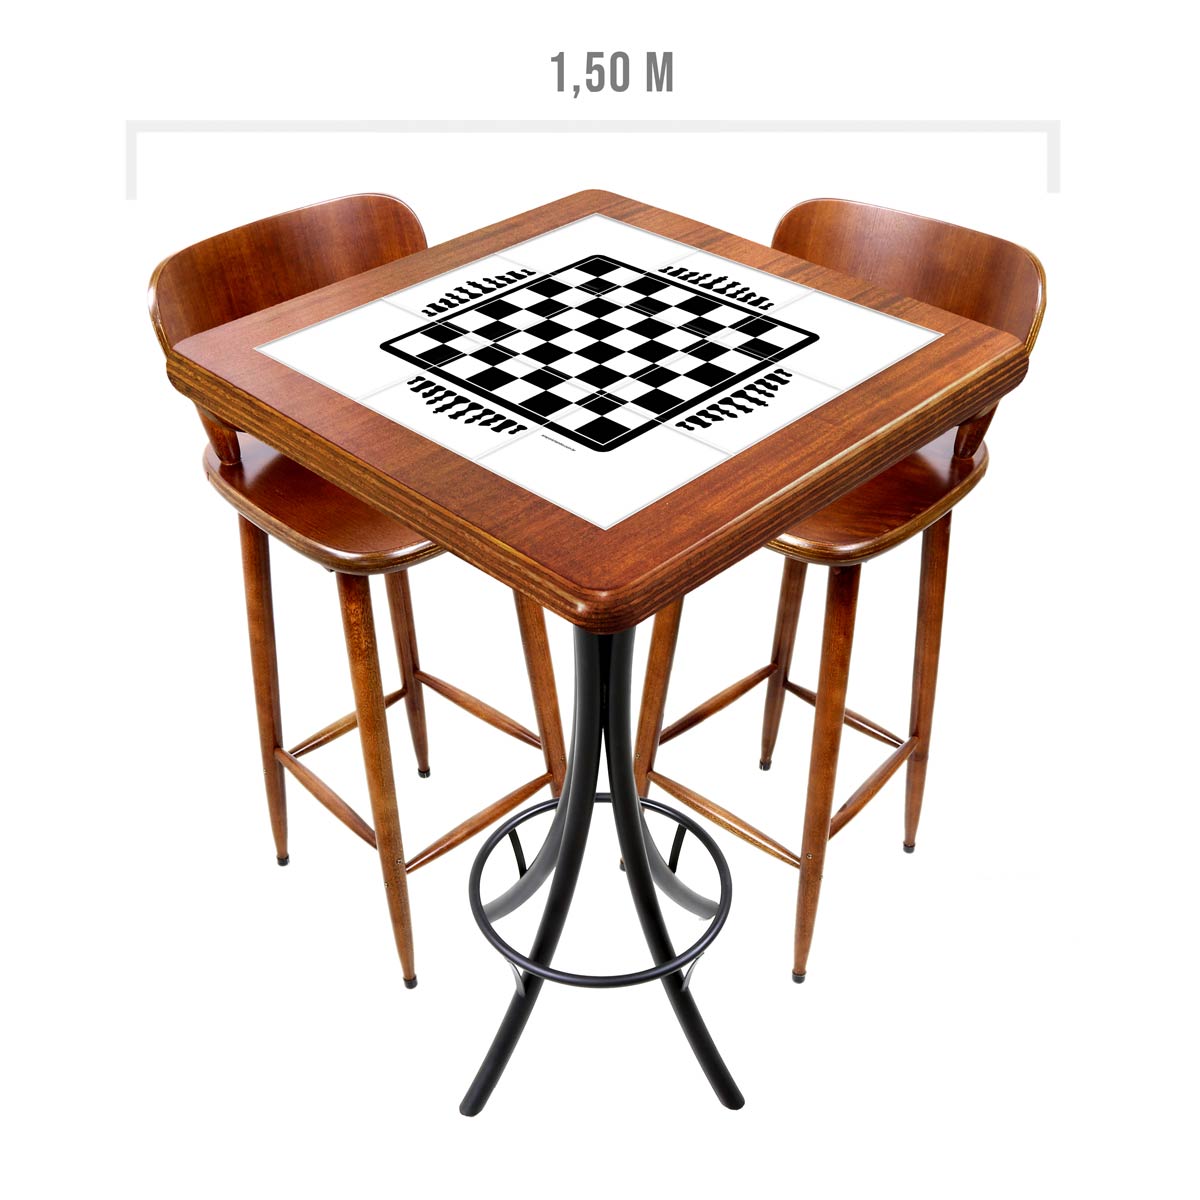 Antiga mesa no estilo inglês, com função de tabuleiro de xadrez